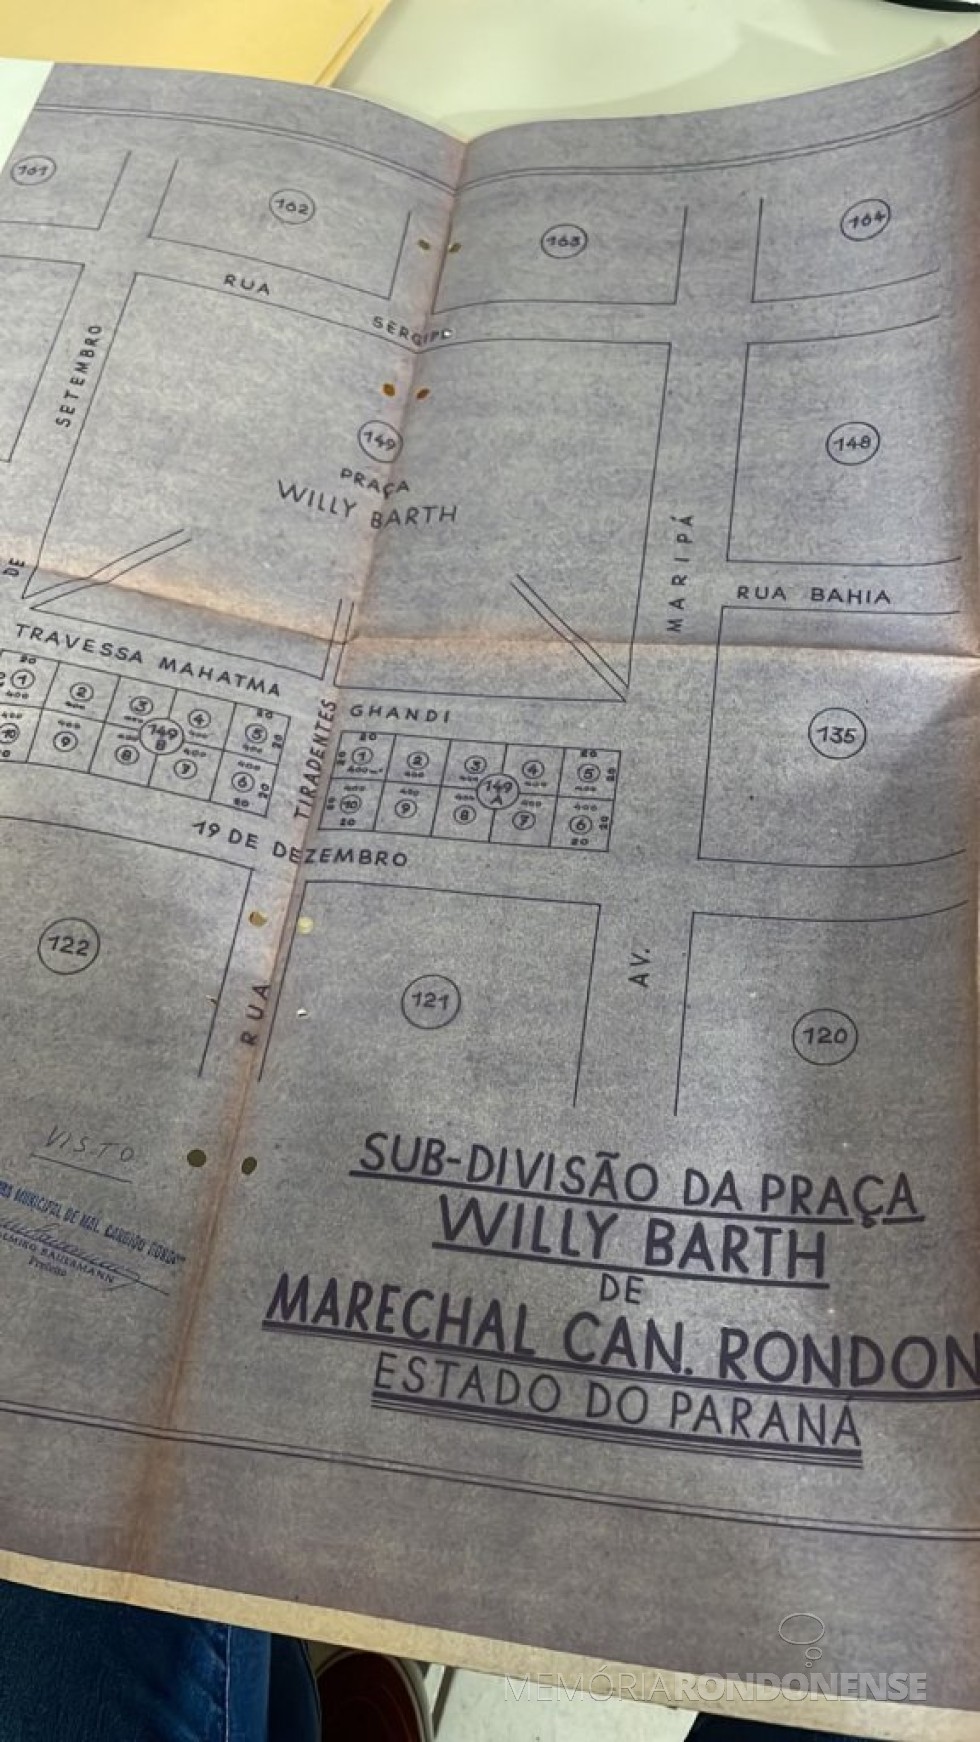 || Outro destaque do mapa com o indicativo da Travessa Mahatma Gandhi que teve a sua nomenclatura alterada para Travessa Brasília pelo projeto de lei nº 5/763 - CM, em maio de 1973.
Imagem: Acervo Câmara Municipal de Marechal Cândido Rondon - FOTO 17 - 